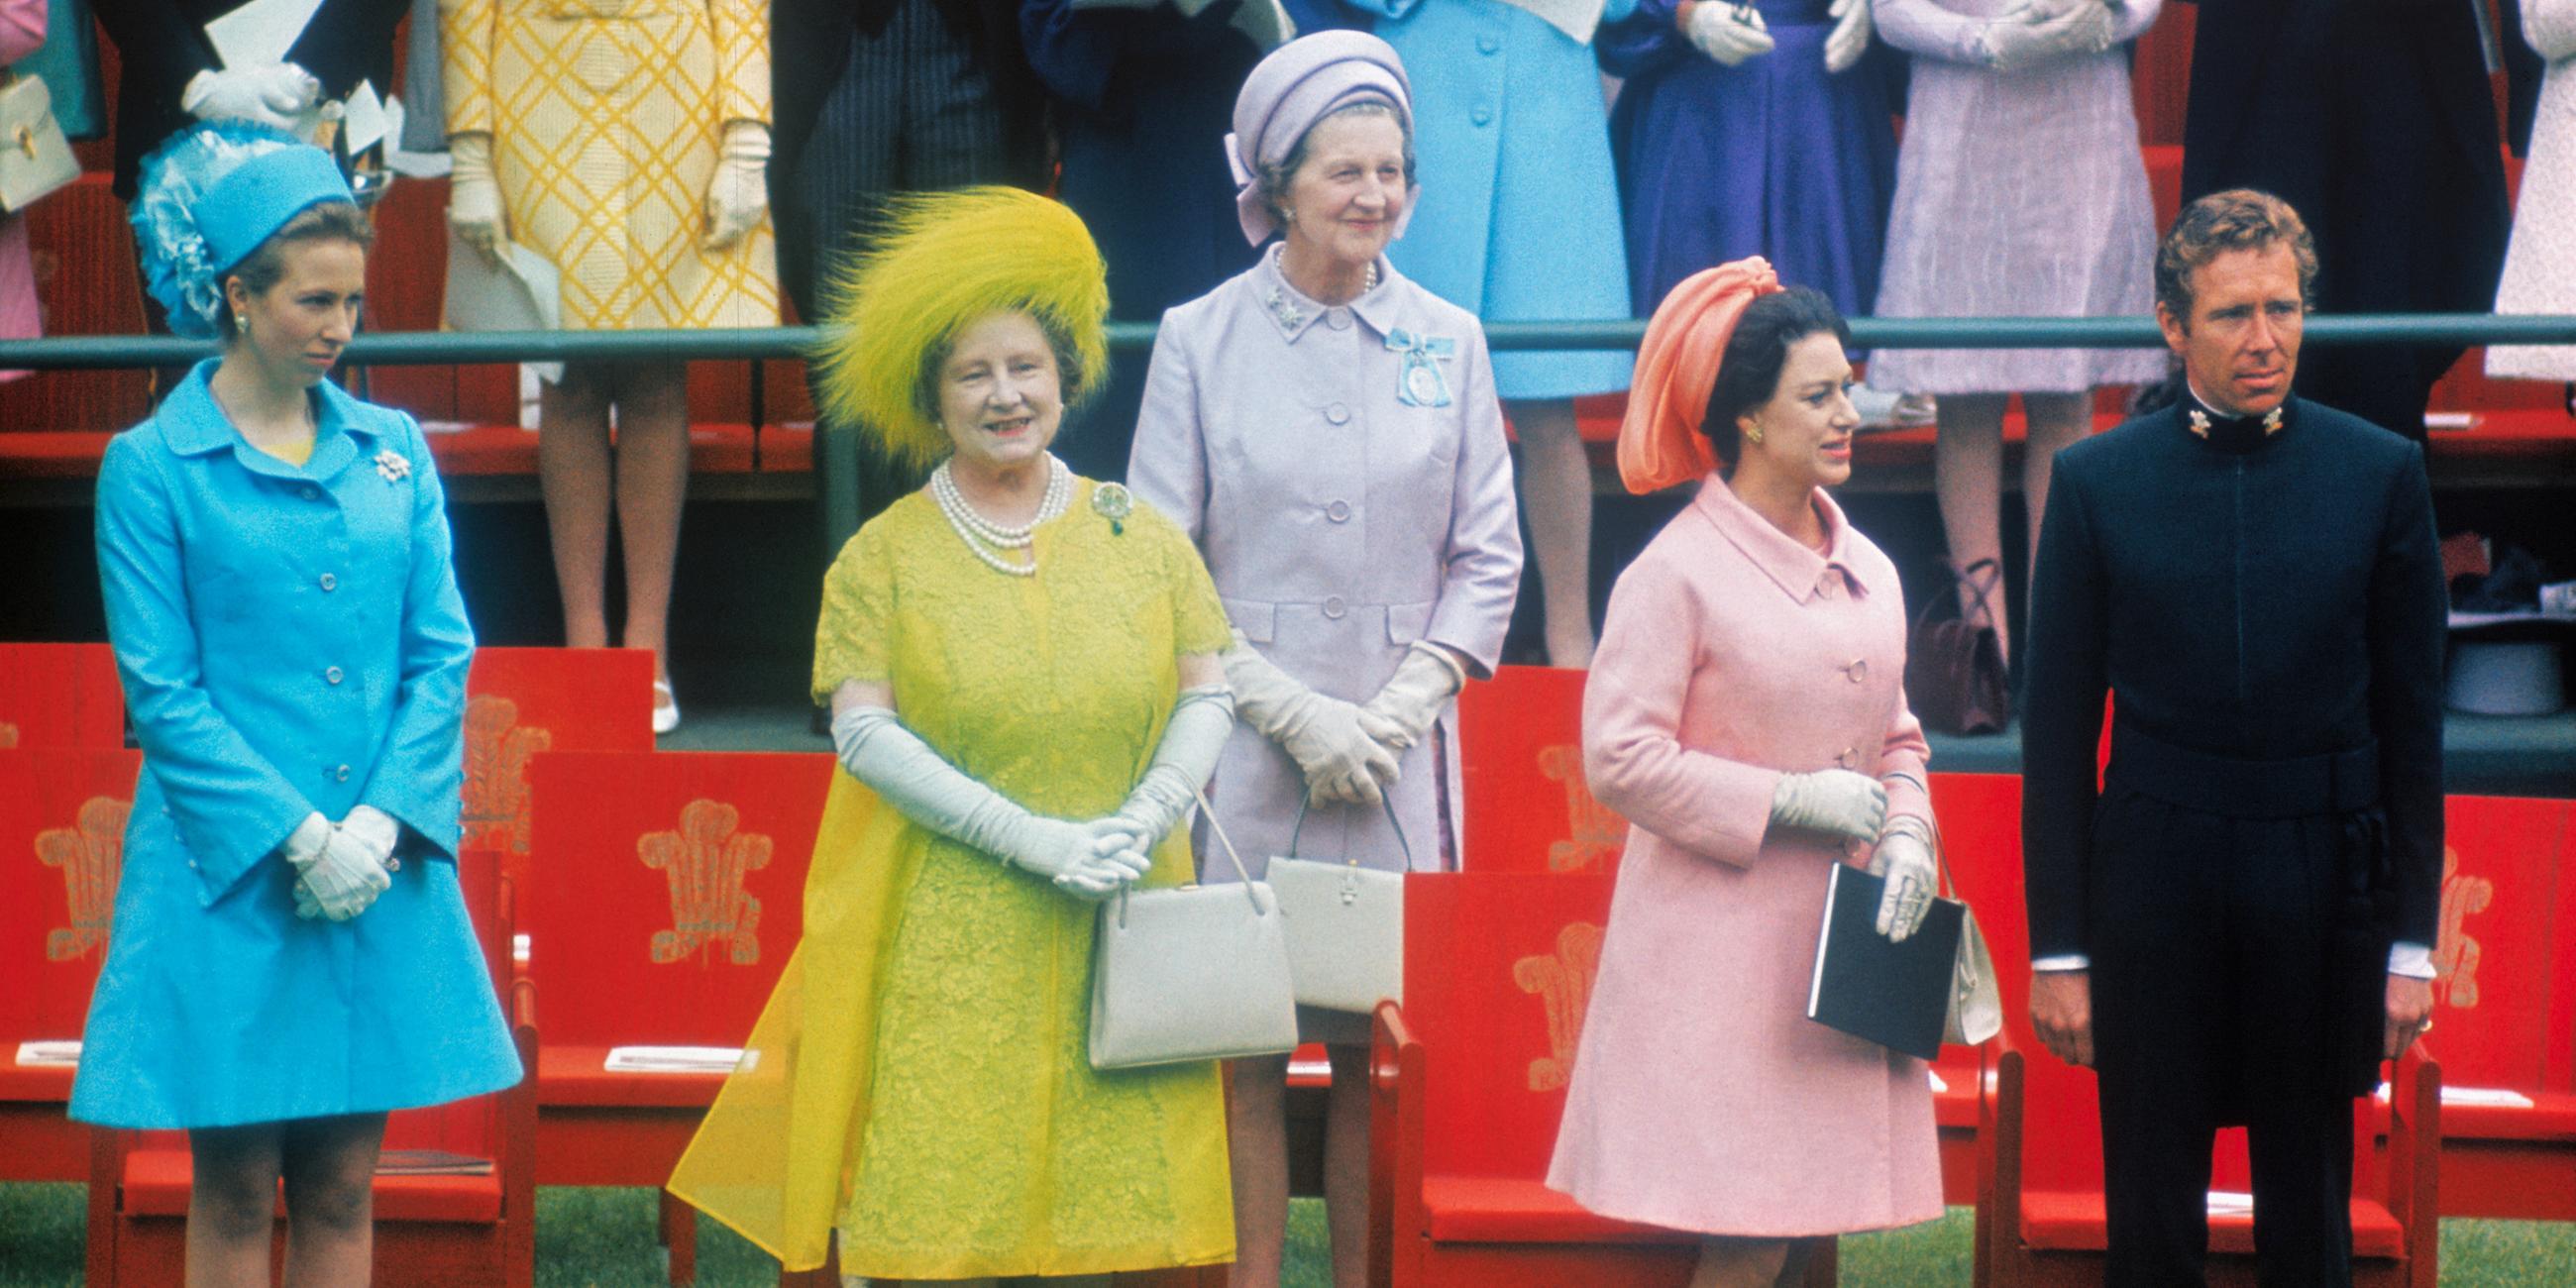  Elizabeth, die Queen Mum, steht in einem gelben Kleid zwischen anderen Frauen mit bunten Kleidern und Hüten und einem Mann in Uniform vor roten Stühlen.